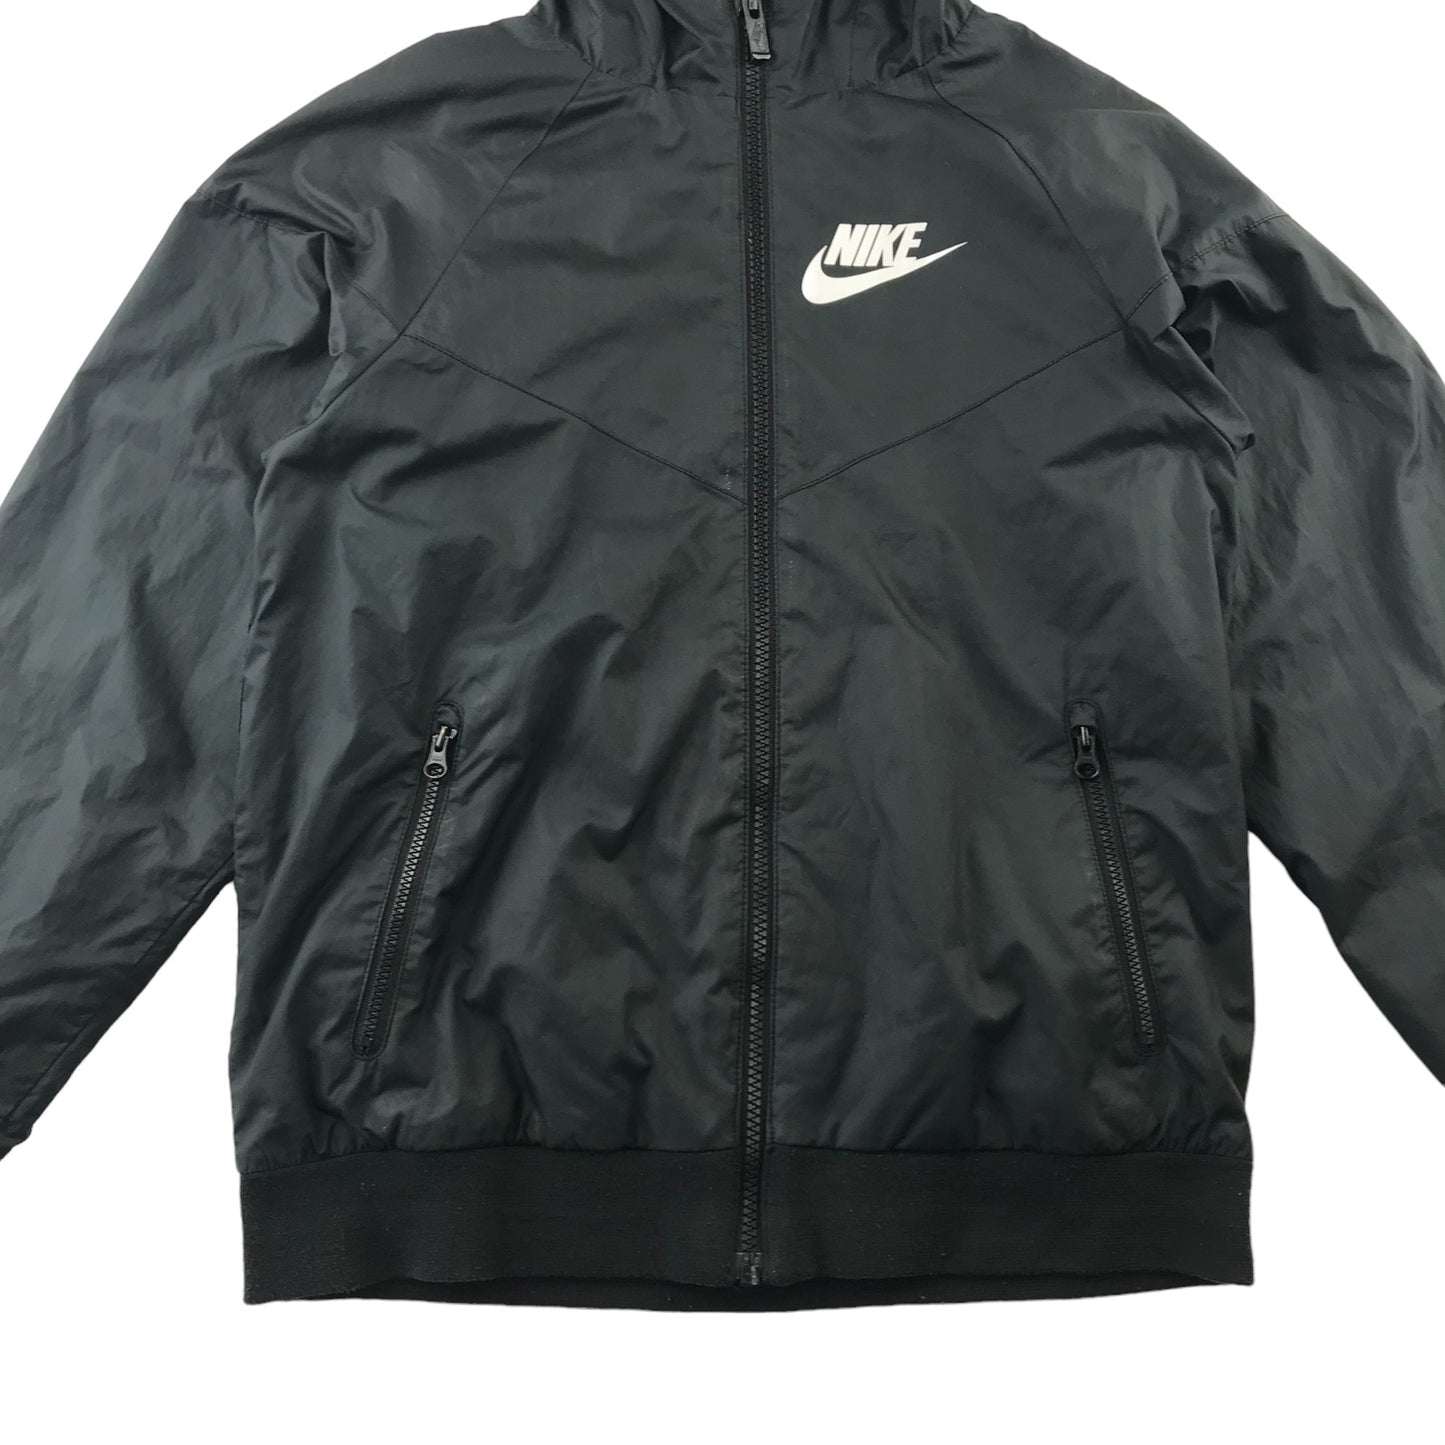 Nike light jacket 10 years black plain with white logo